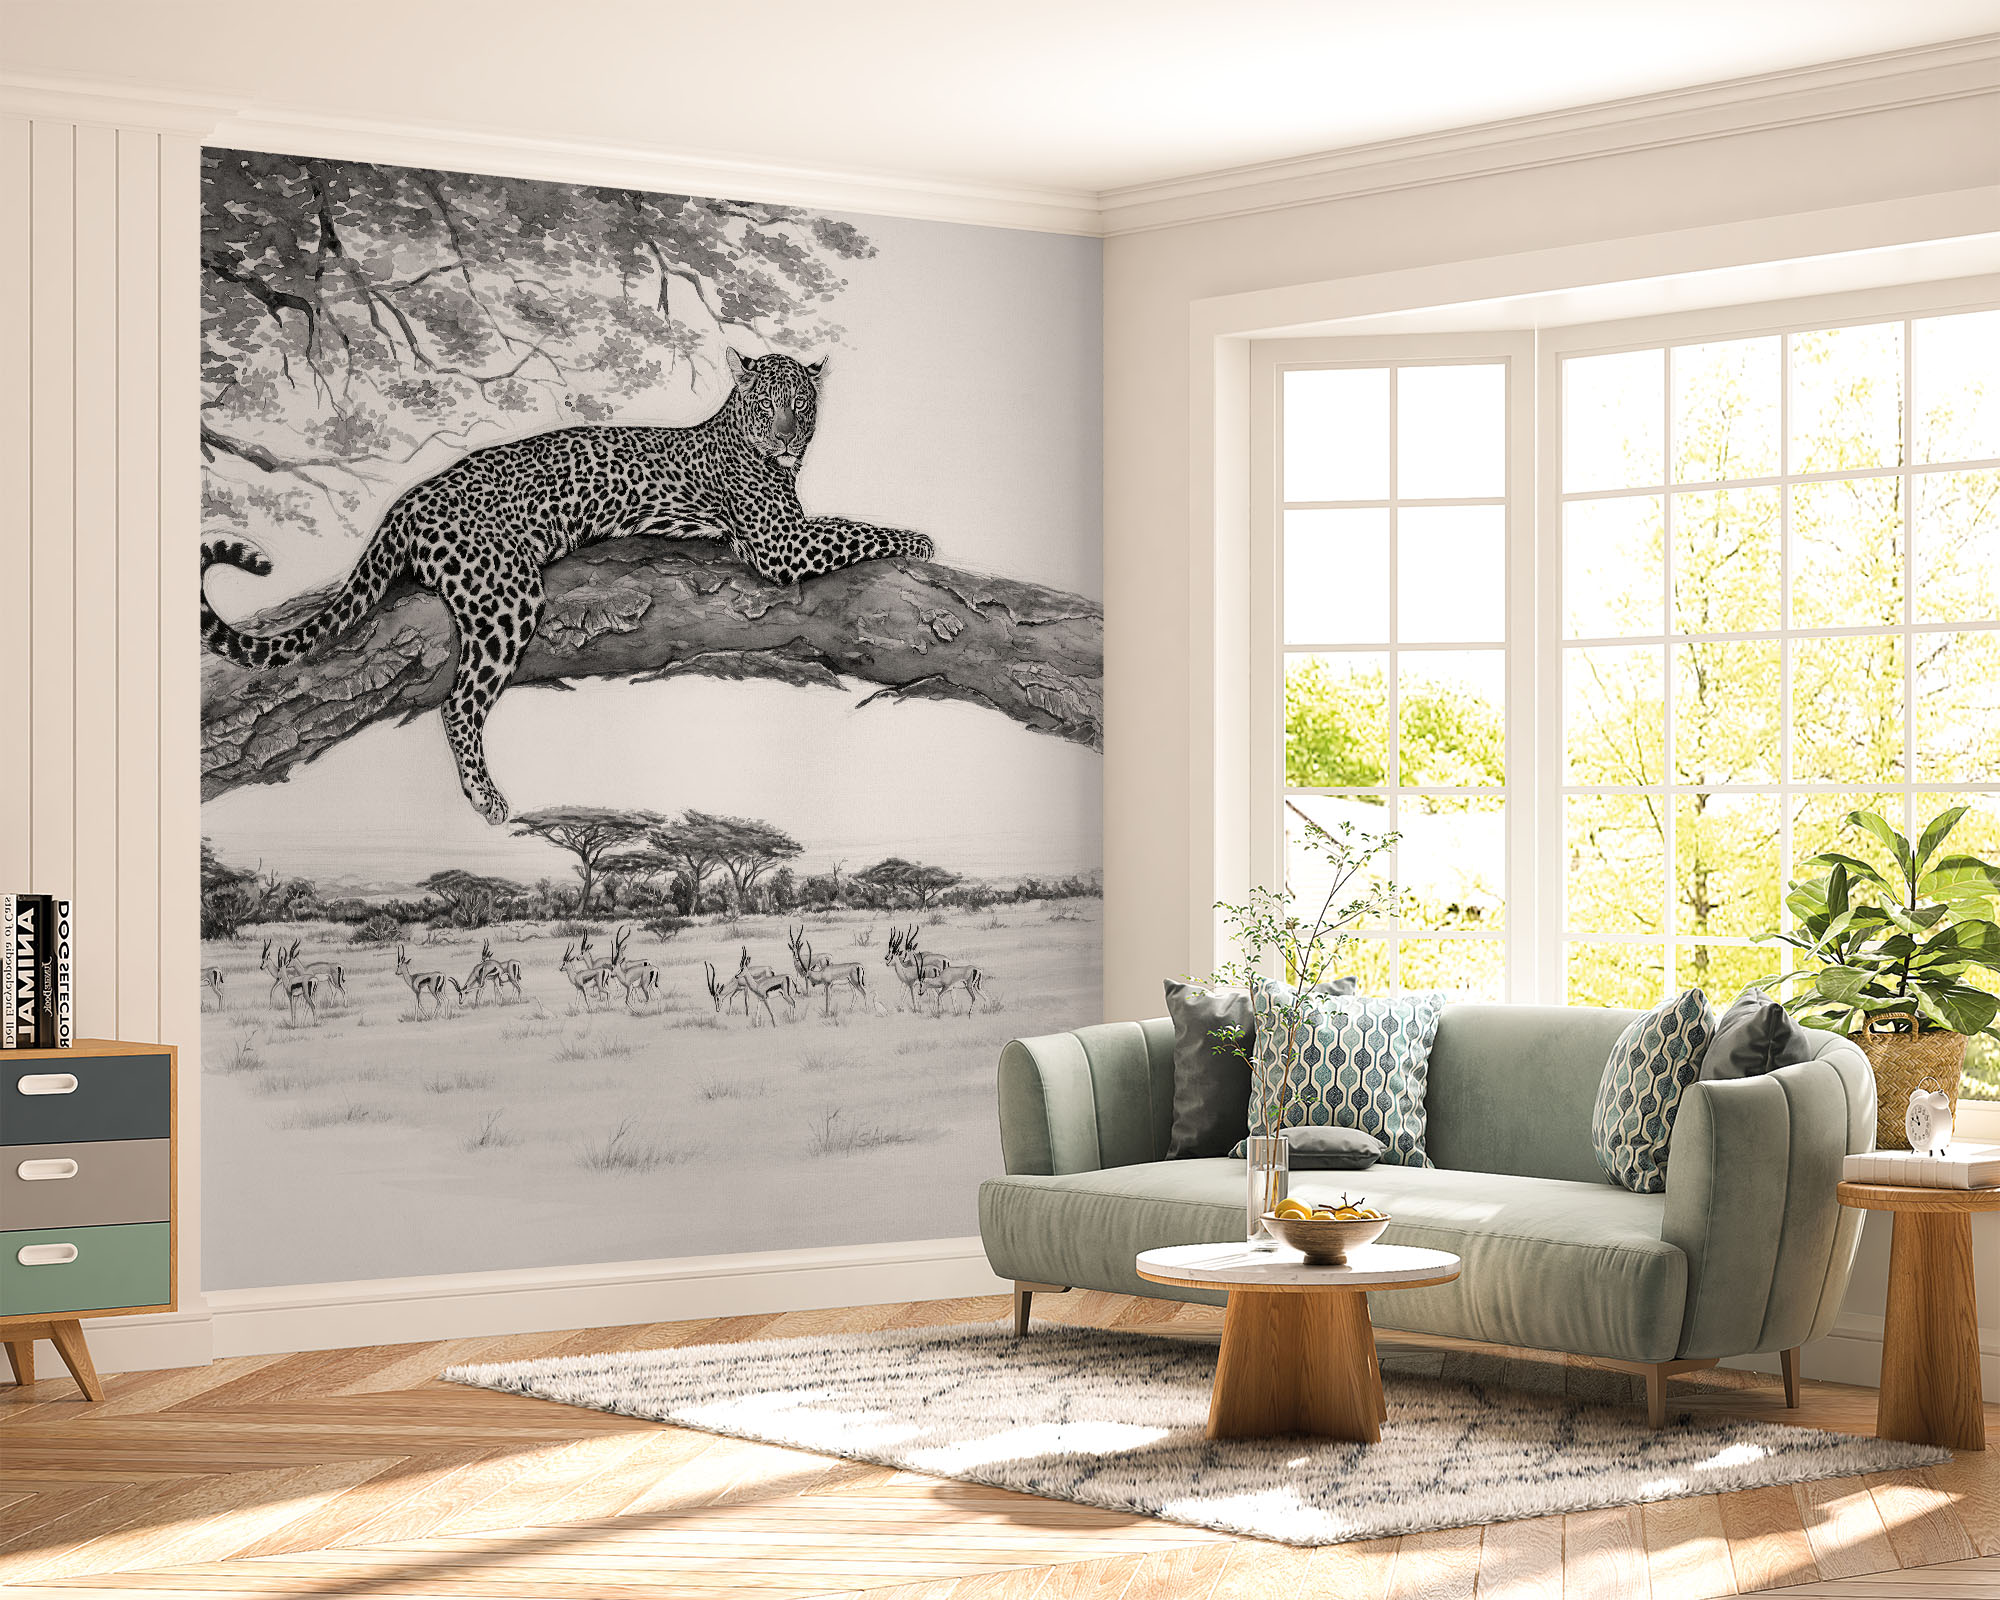 deco-murale-papier-peint-panoramique-animaux-afrique-leopard-panthere2-monochrome